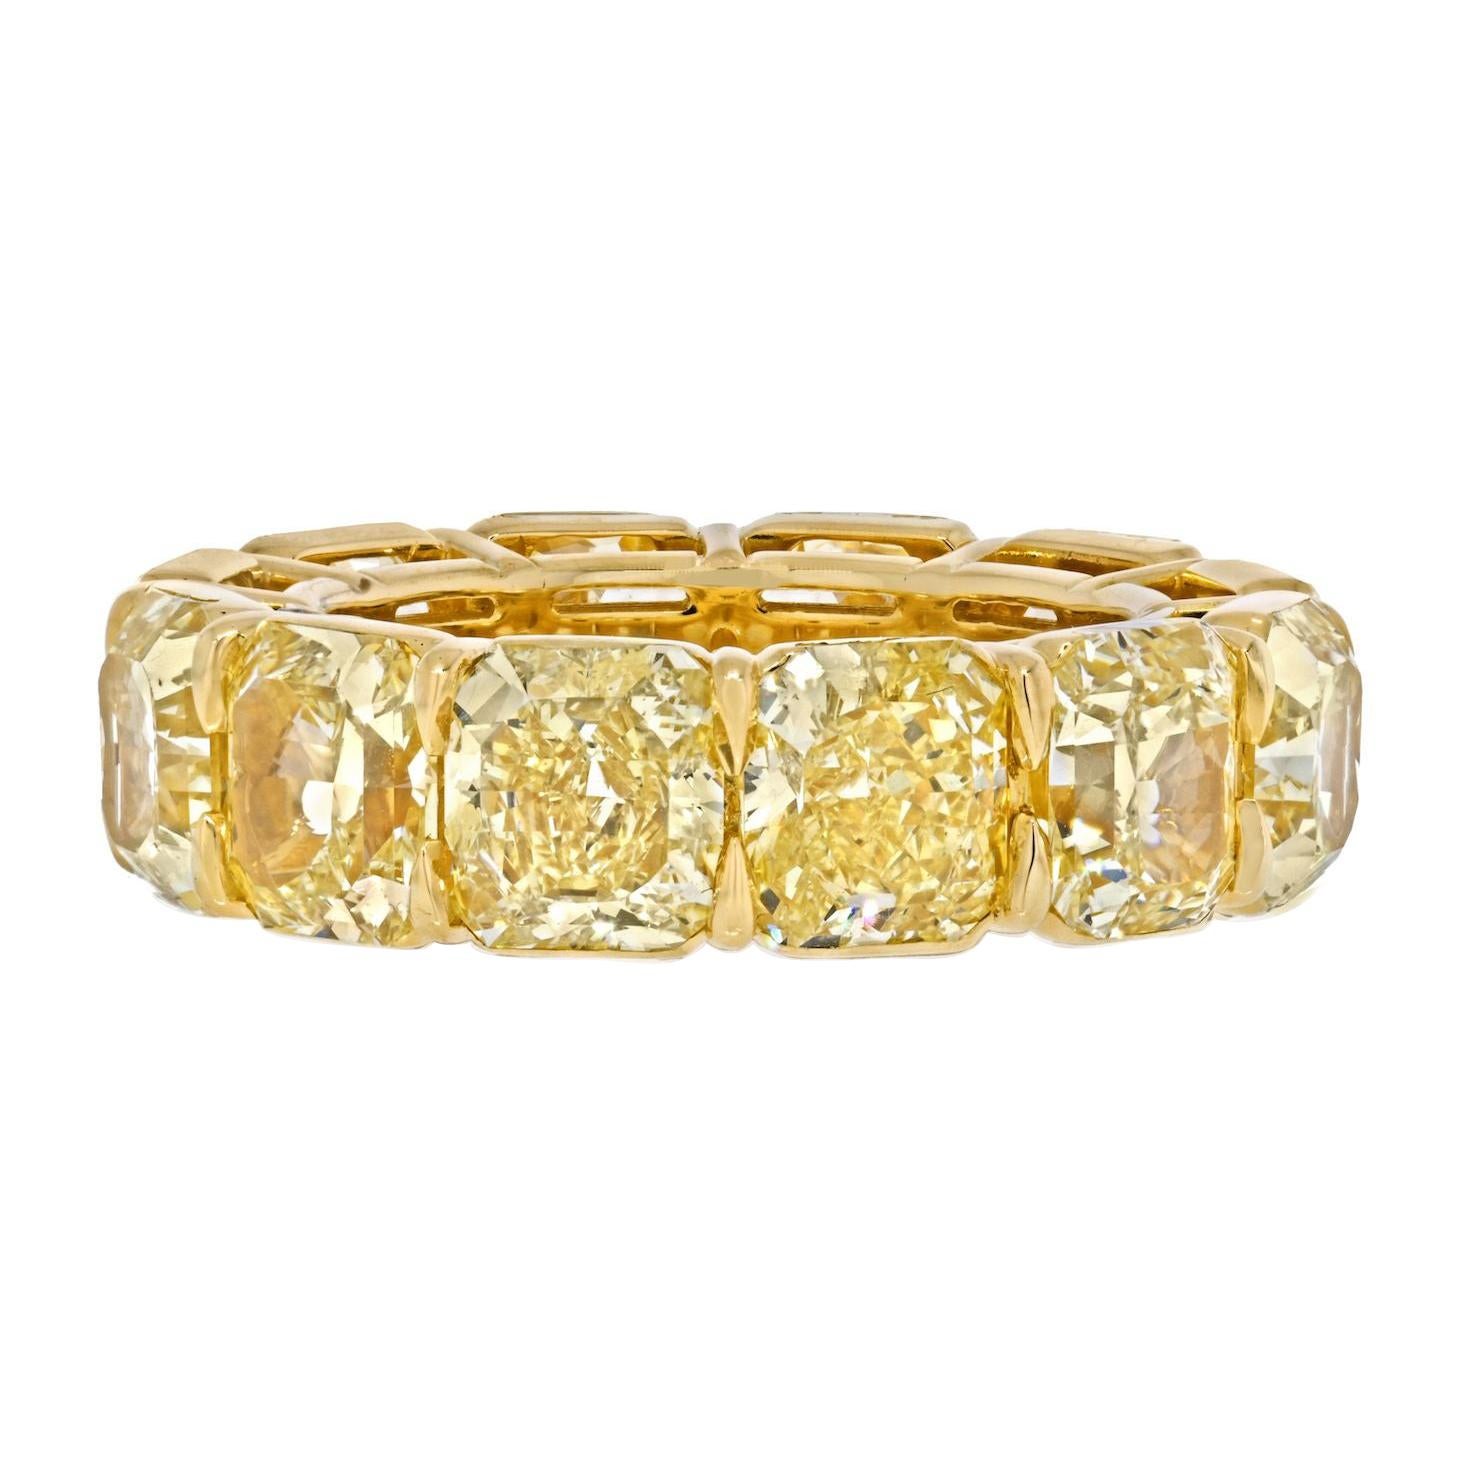 Bracelet éternel en or jaune 18 carats à taille rayonnante et diamant jaune fantaisie de 15 carats.
Monté avec 12 diamants certifiés GIA. Taille du doigt : 6.75. 
Couleur : jaune fantaisie certifié
Clarté : toutes certifiées VVS2 à SI1 
Certificats